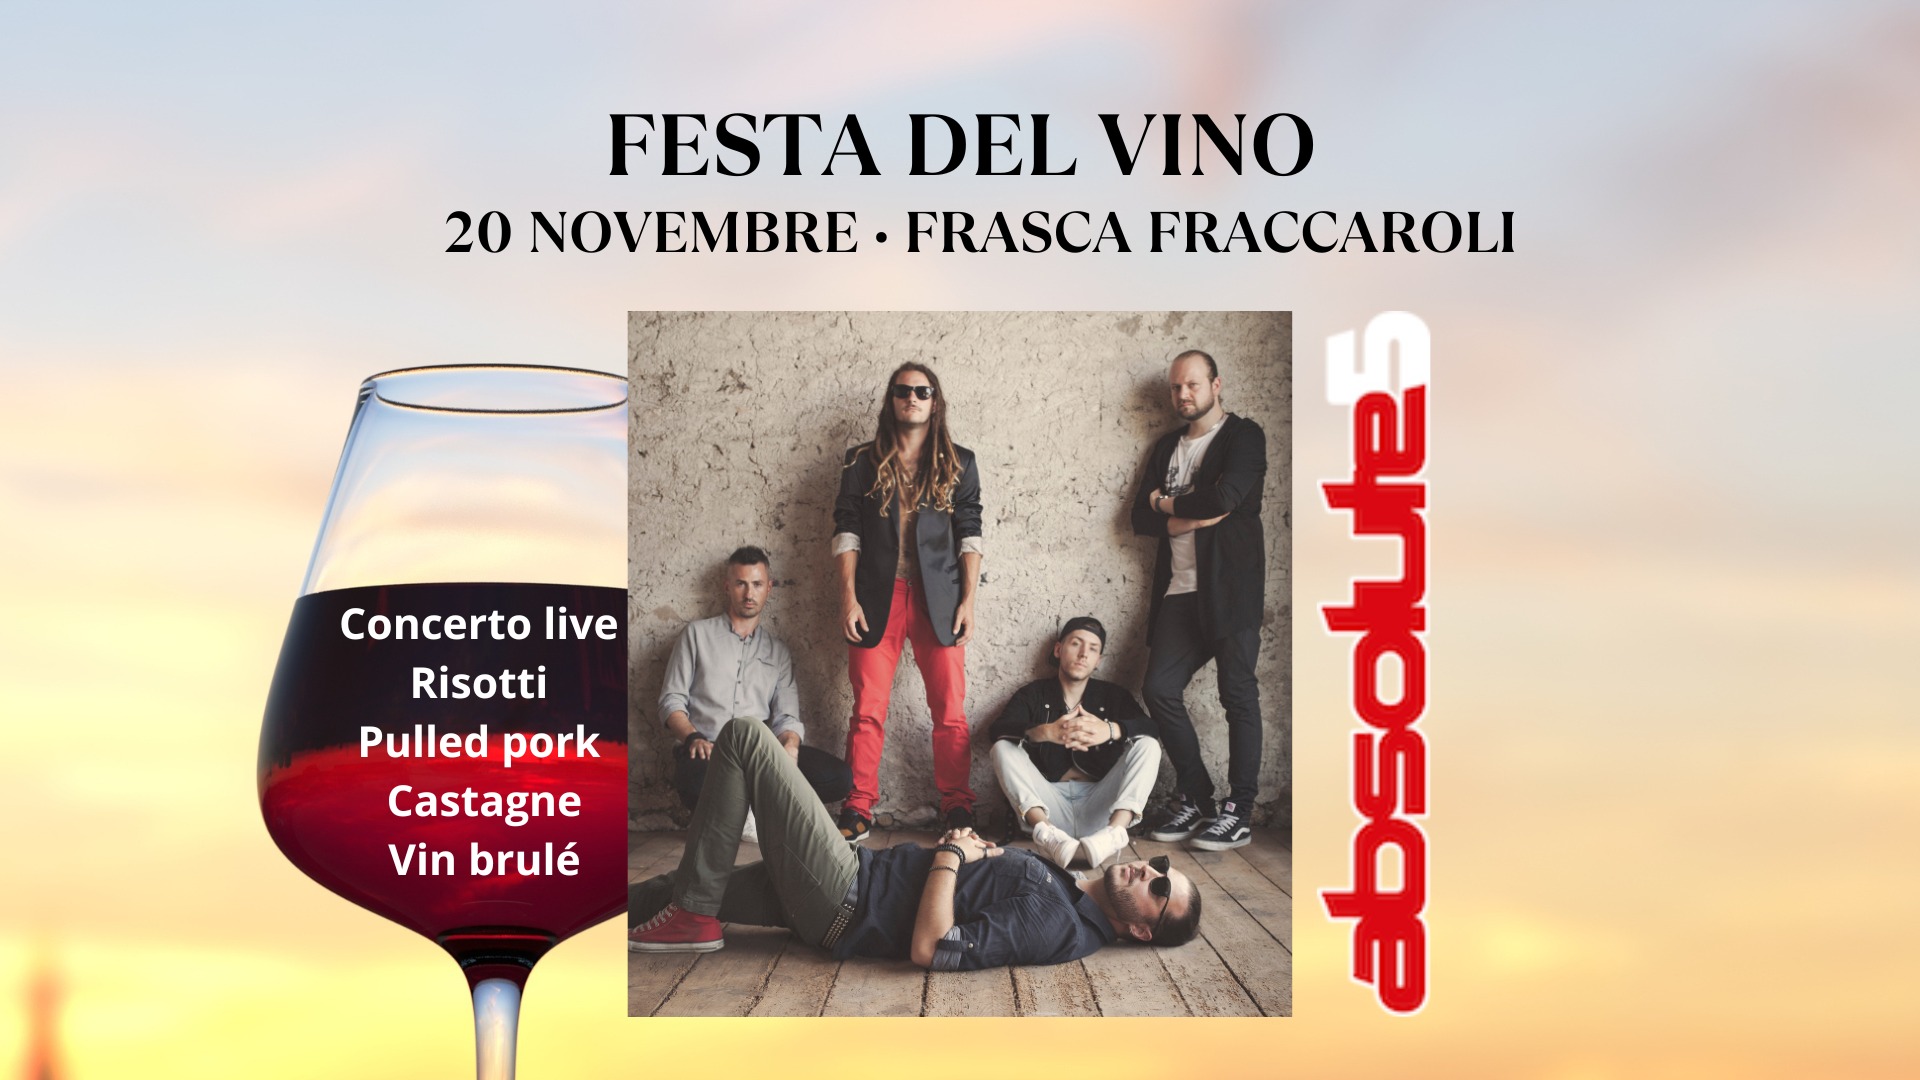 Festa del vino in Frasca Fraccaroli